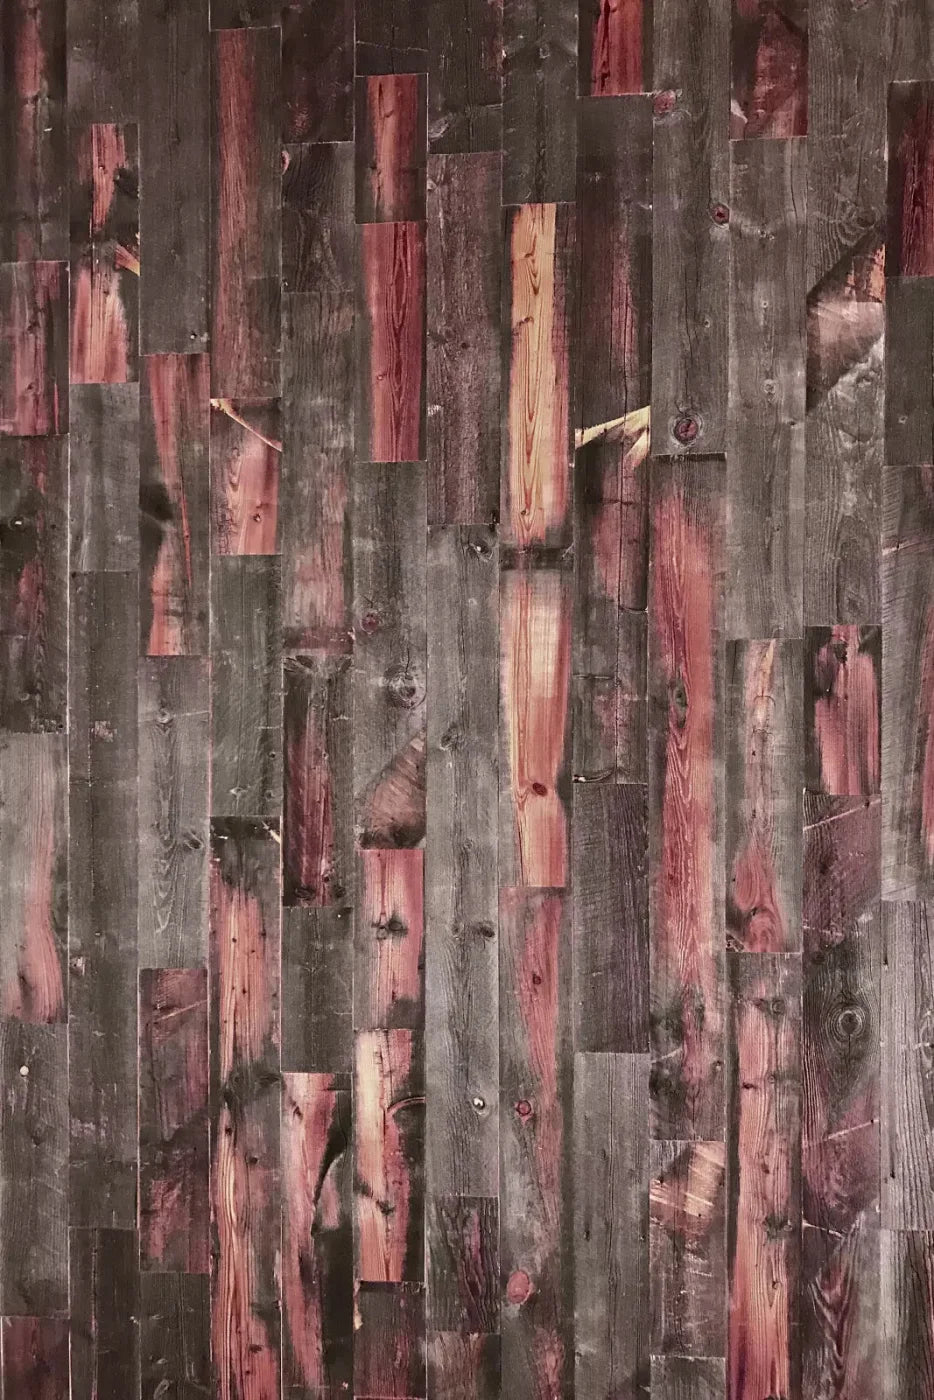 Jorja 4X5 Rubbermat Floor ( 48 X 60 Inch ) Backdrop